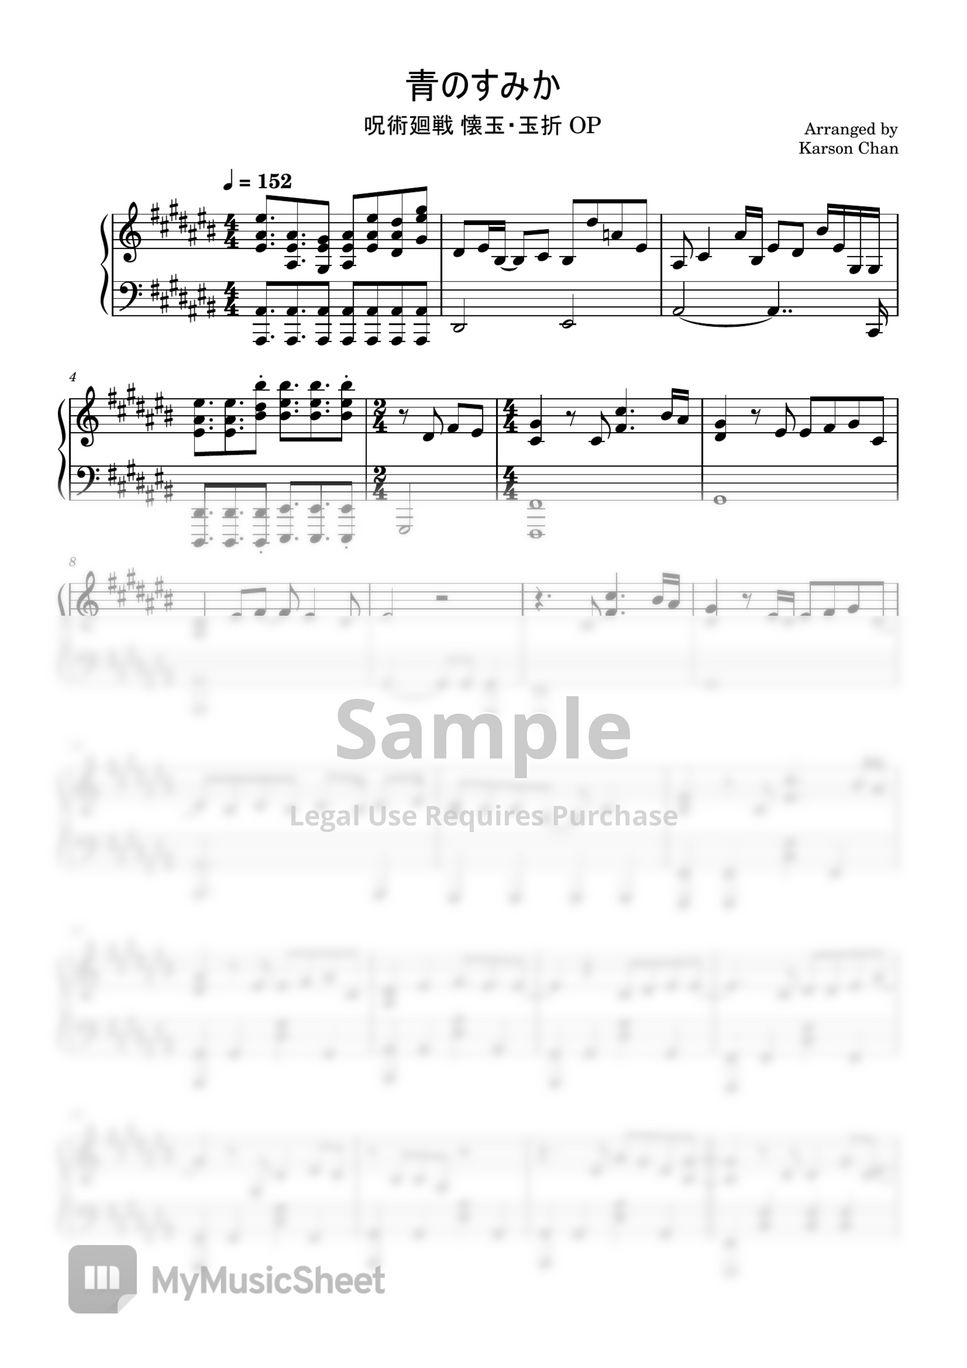 キタニタツヤ - 青のすみか Full Version (呪術廻戦 懐玉・玉折 OP) --WITH MIDI+WAV+Musescore Secret Link by Karson Chan